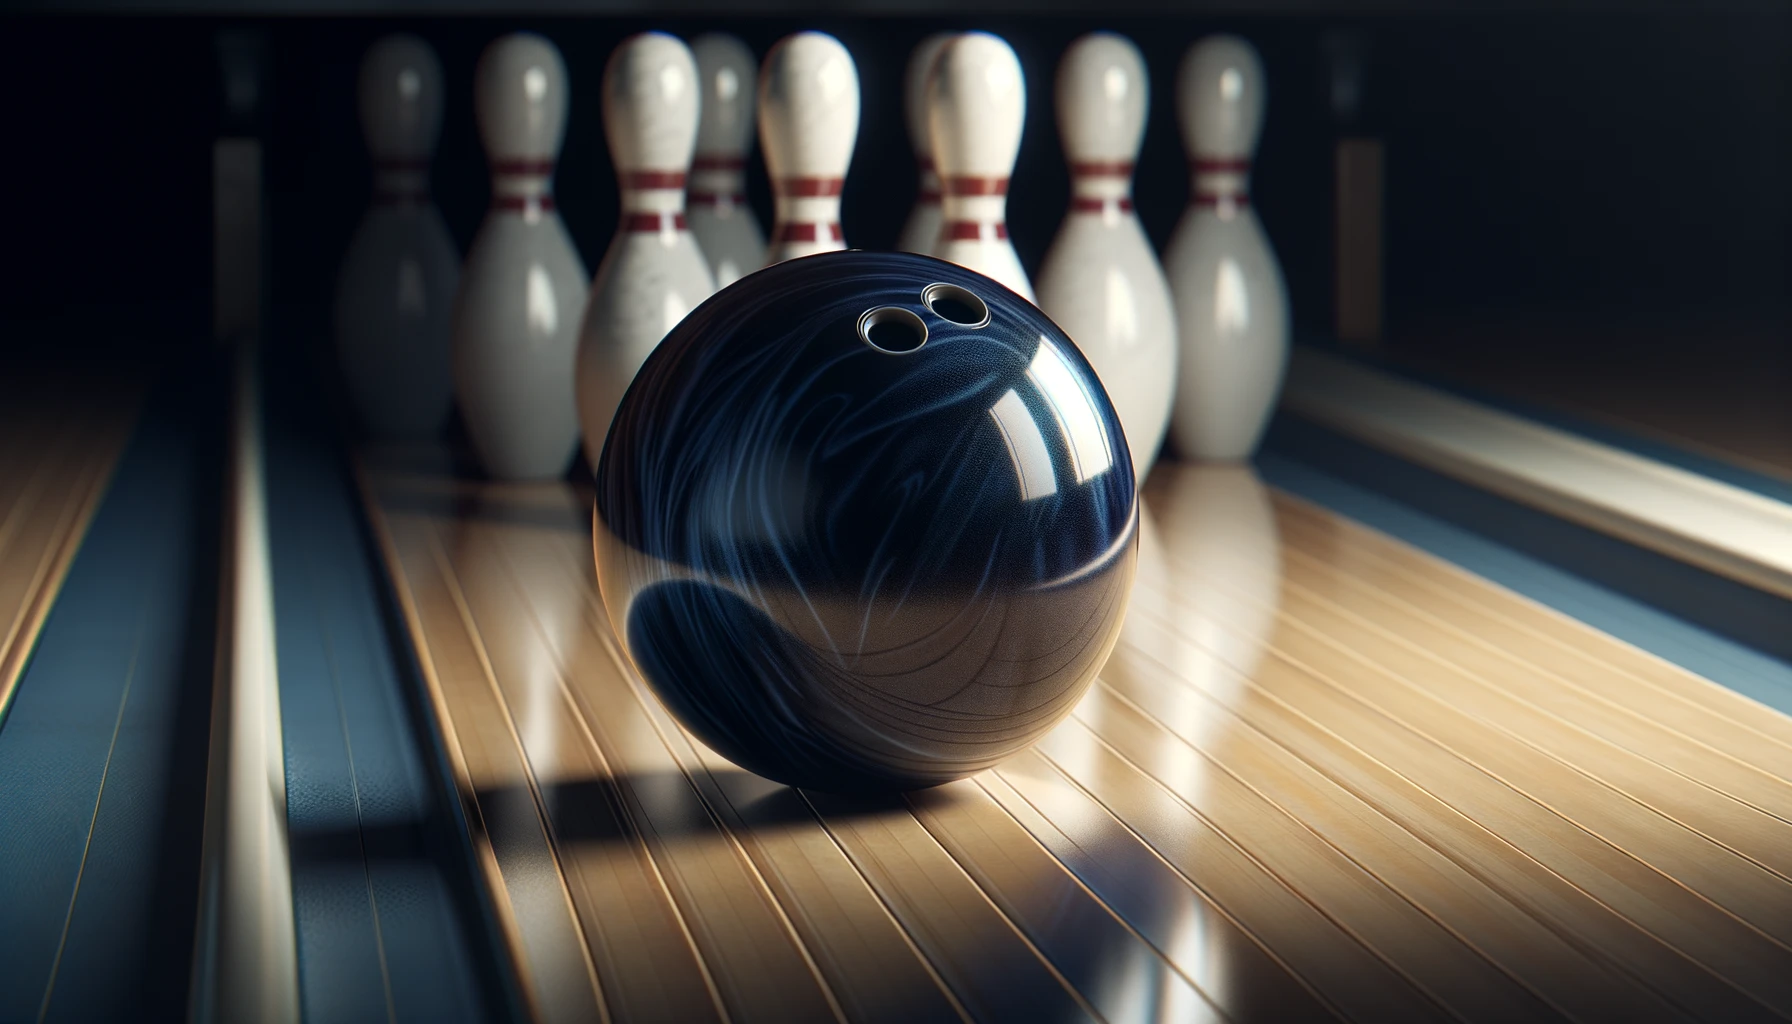 Foto einer glänzenden Bowlingkugel, die auf einer hölzernen Bowlingbahn ruht, mit Bowlingpins in der Ferne.